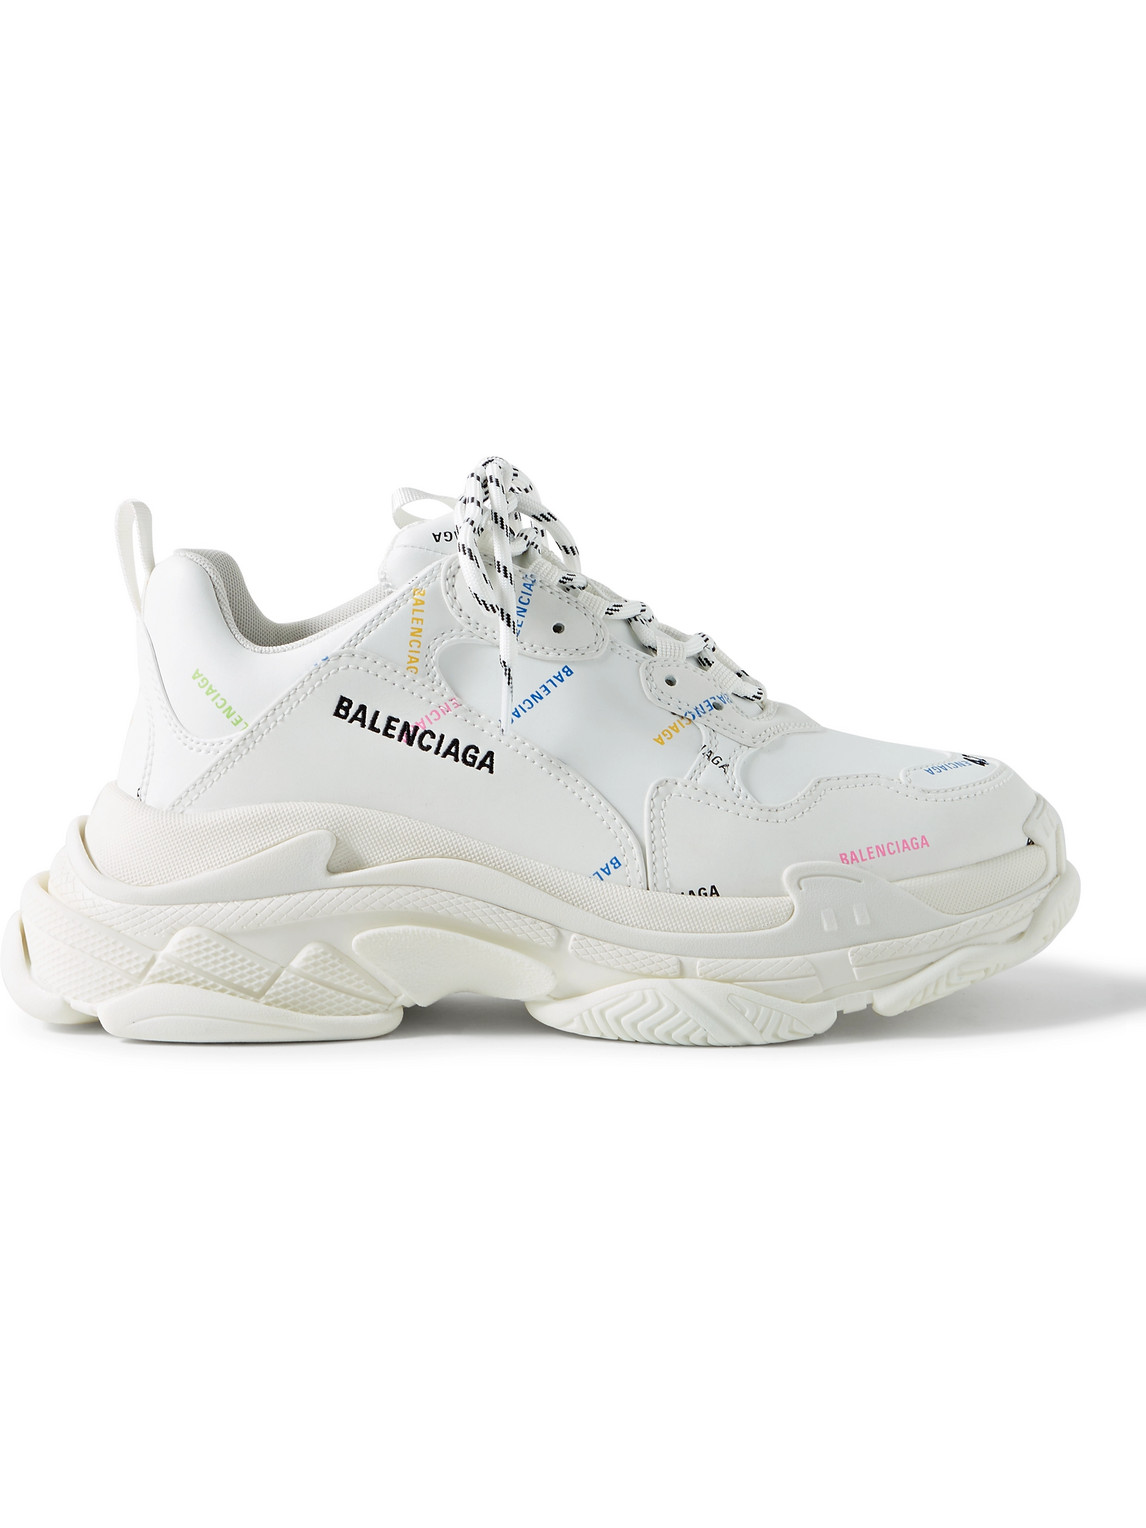 Balenciaga - Triple S Logo-Print Faux Leather Sneakers - Men - White - EU 41